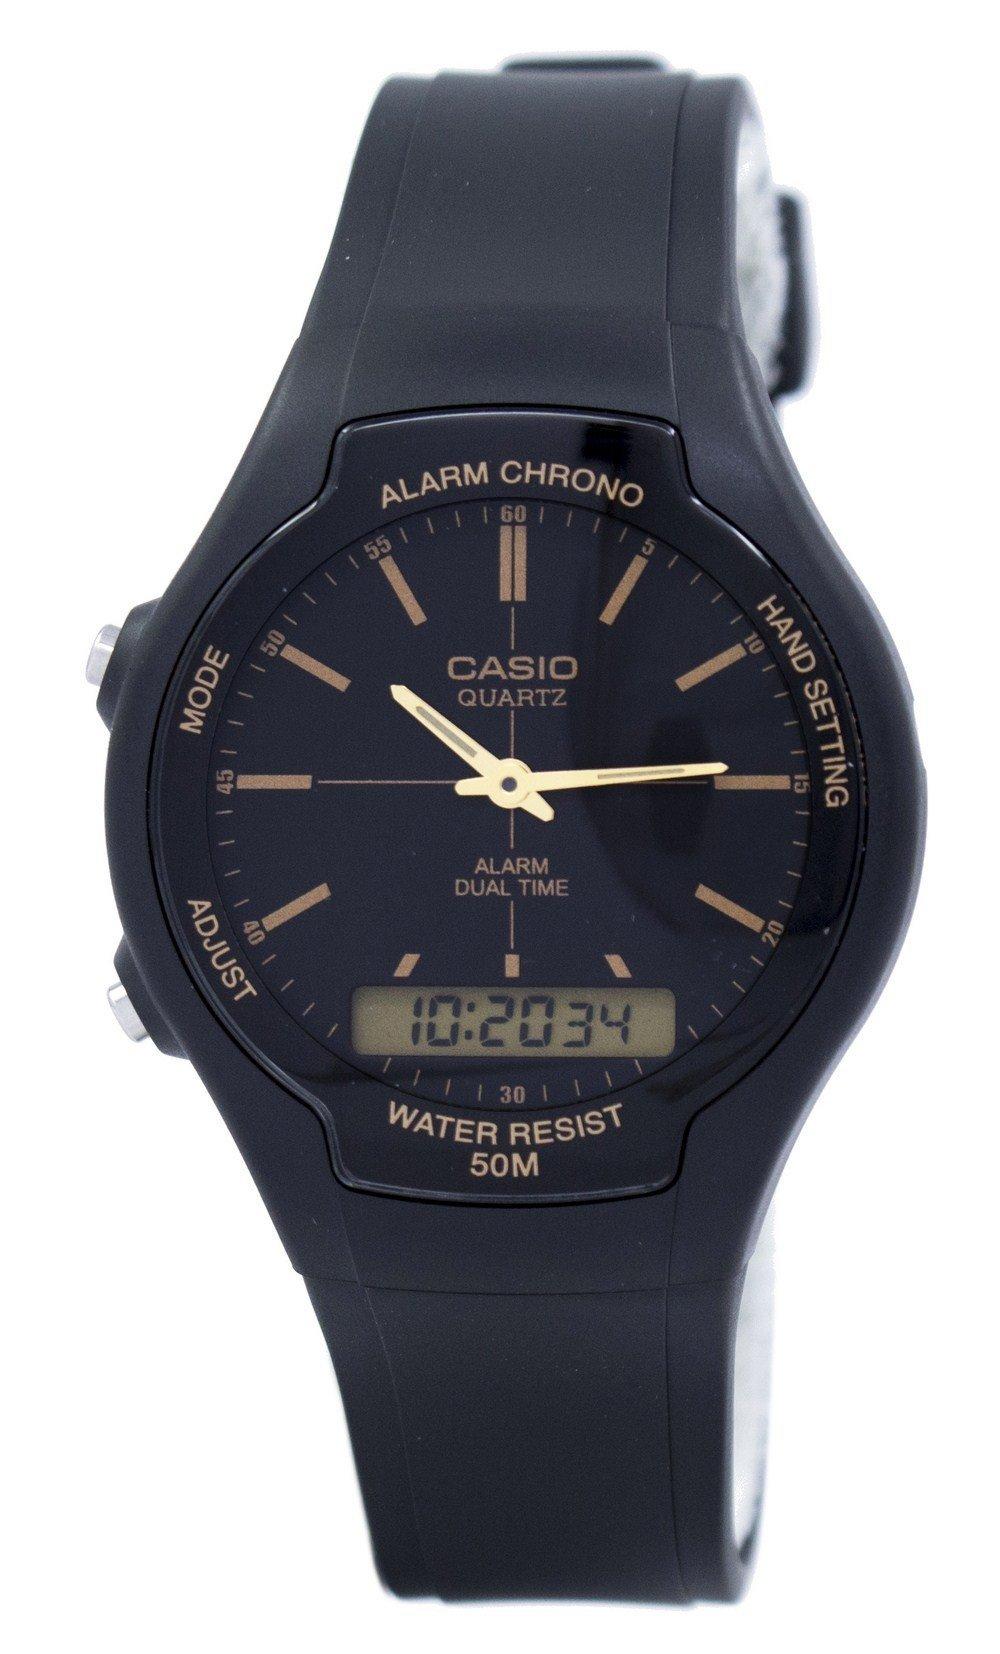 Casio Alarm Chrono Dual Time Quartz AW-90H-9EVDF AW90H-9EVDF Men's Watch